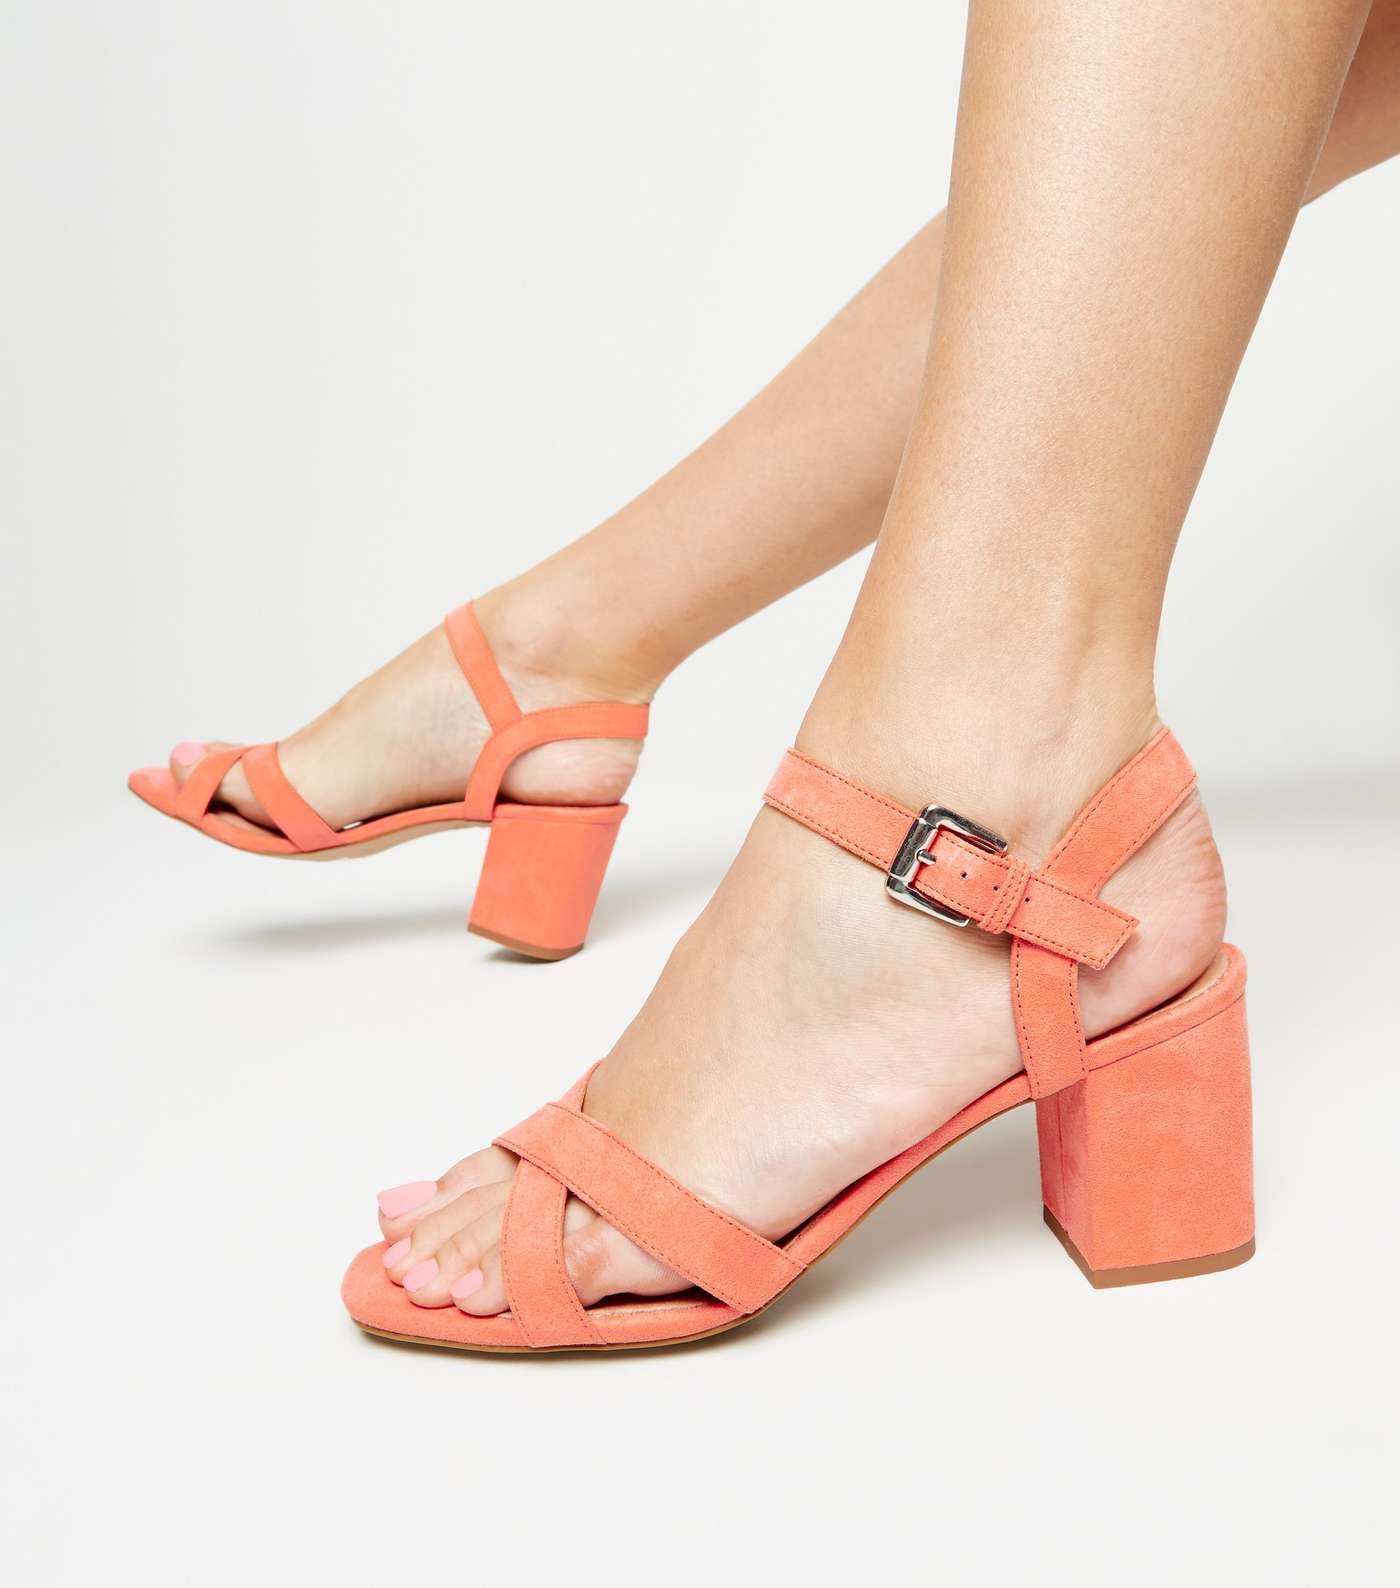 Coral Comfort Flex Low Block Heel Sandals Image 2